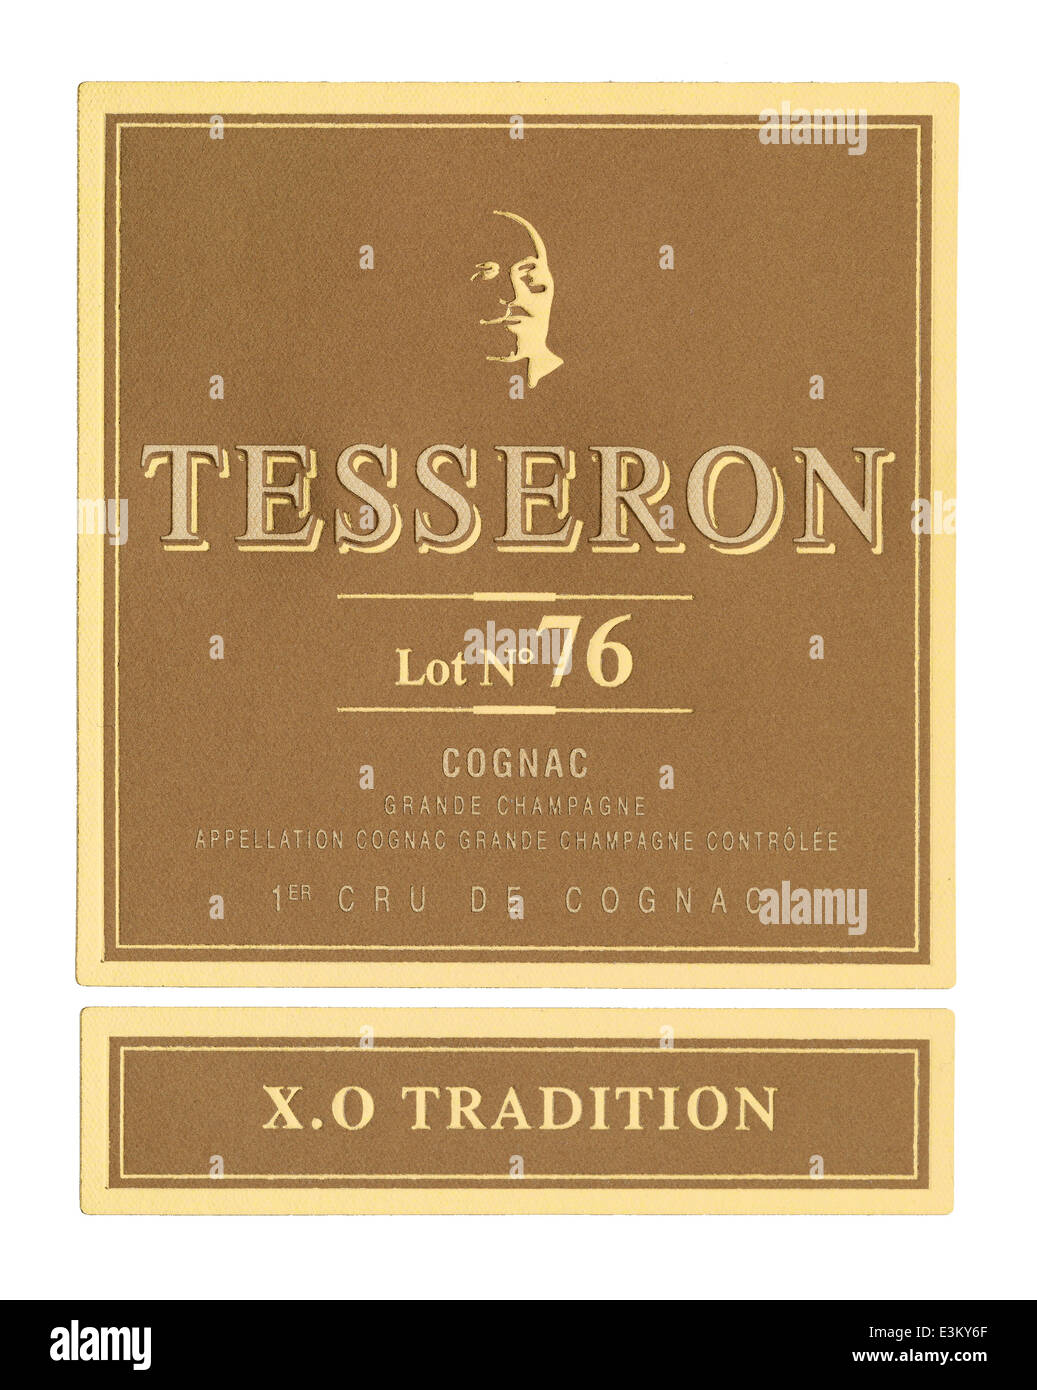 Tesseron viel 76 Luxus Cognac Flaschen-Etikett Stockfoto